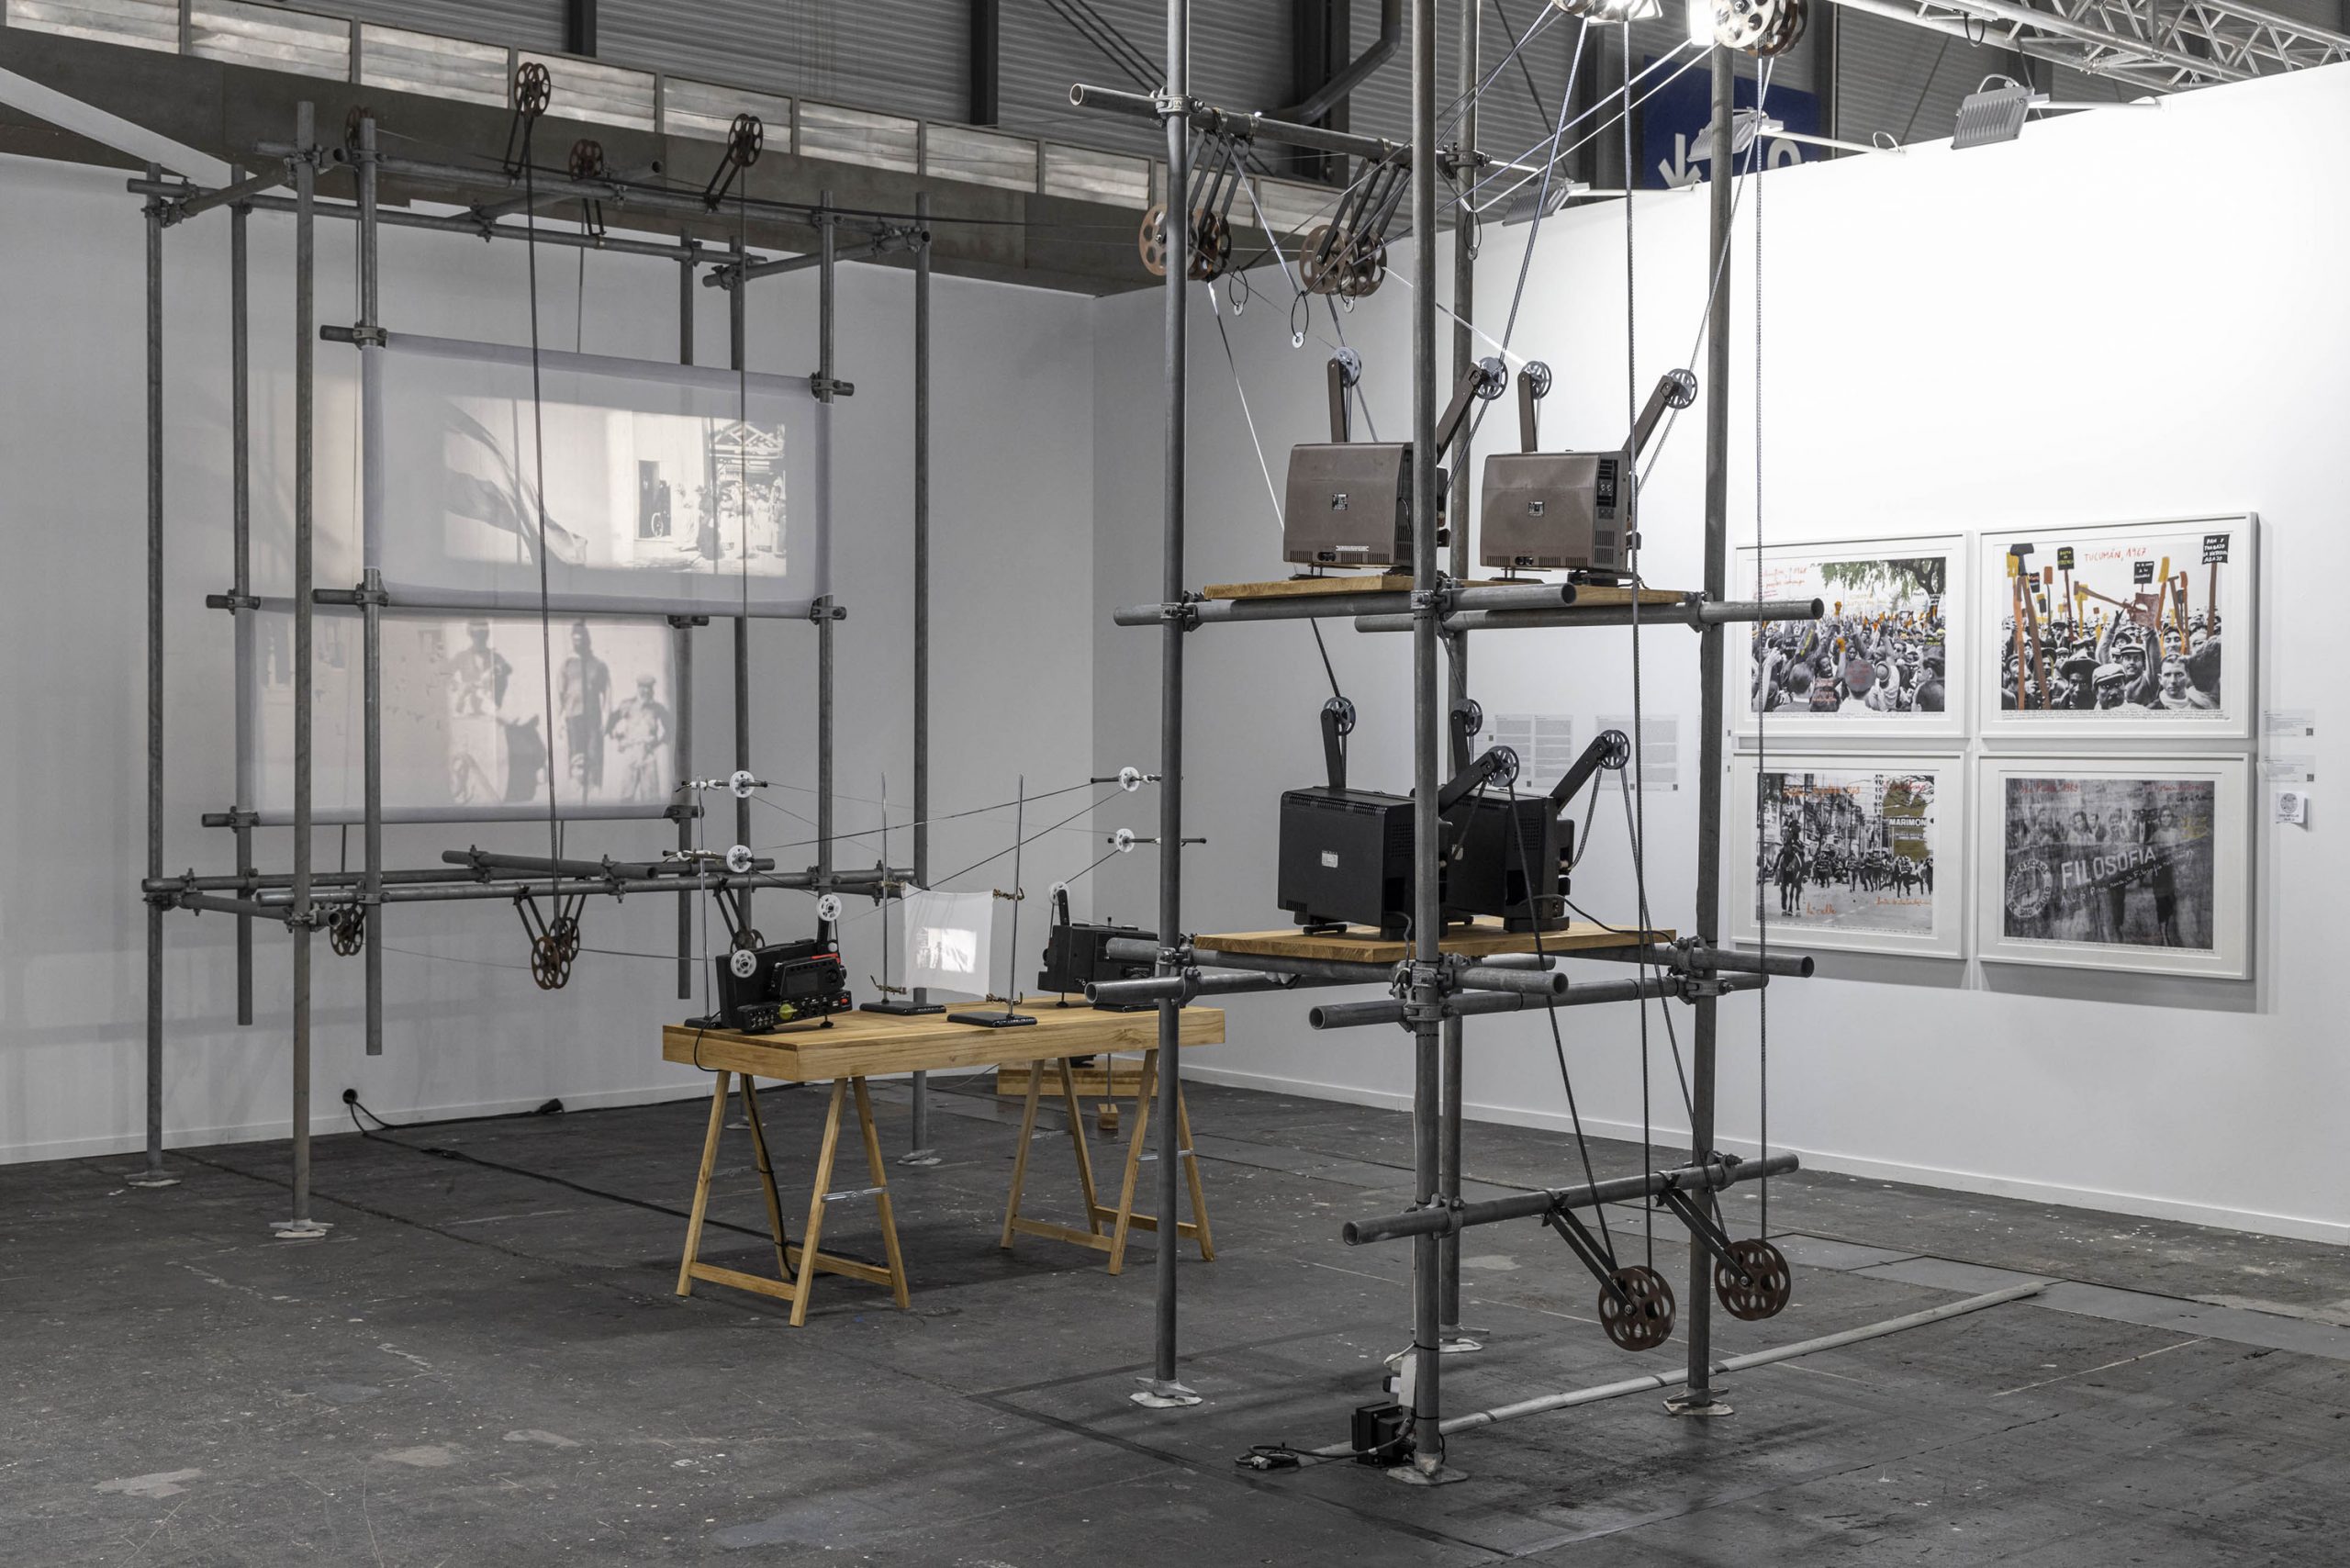 Galería: Lexus Entrega el Premio al Mejor Stand y Contenido Artístico a la Galería Rolf Art en ARCOmadrid 2022